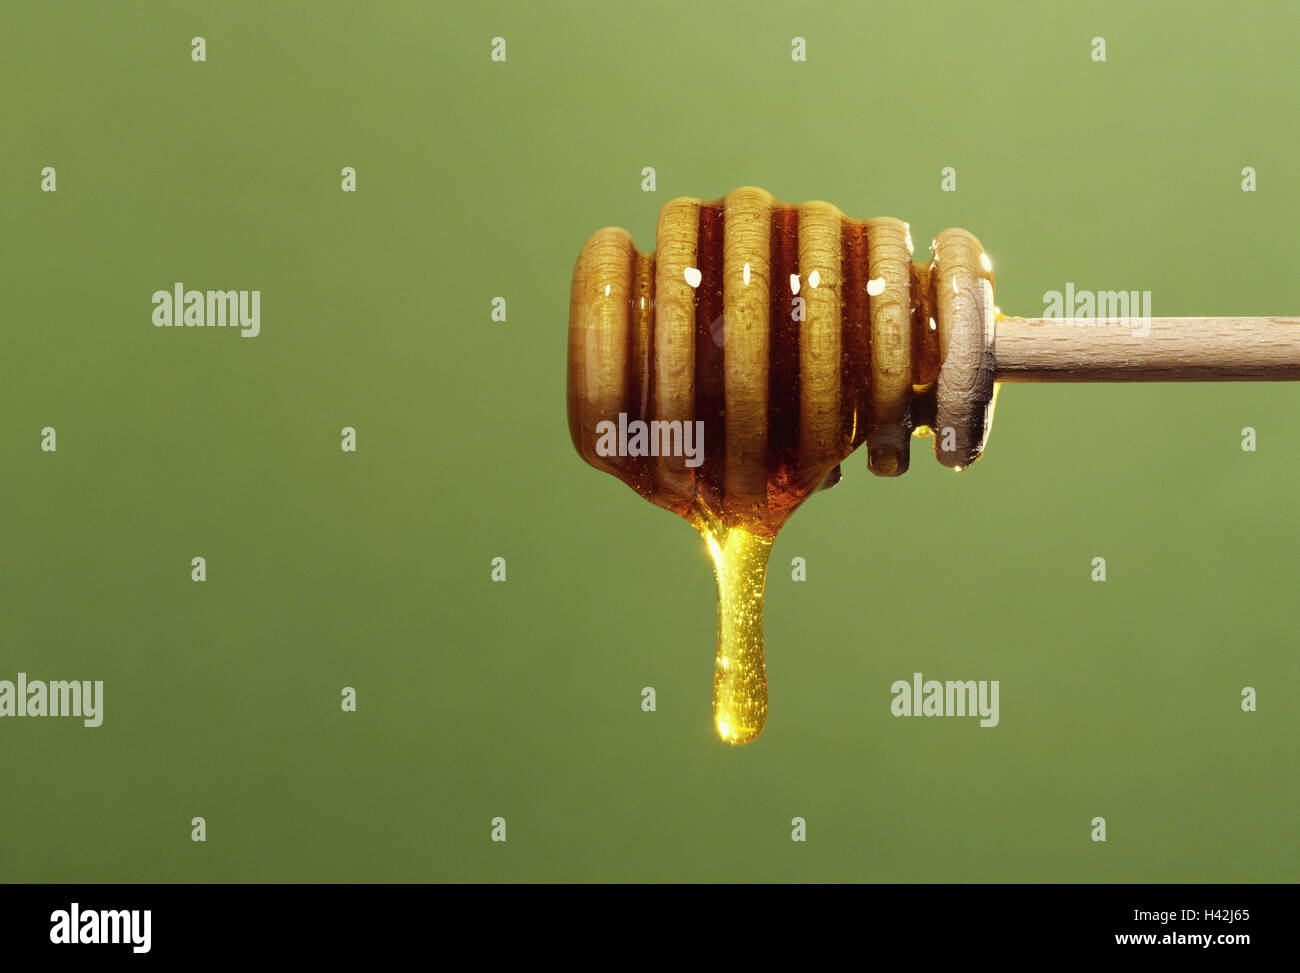 Honig-Dosierer la cuillère de miel, miel, lob, produit naturel, miel naturel, le miel, l'alimentation, la nutrition, la santé, la nutrition, soucieux de la santé consciente, photographie de produits, Banque D'Images